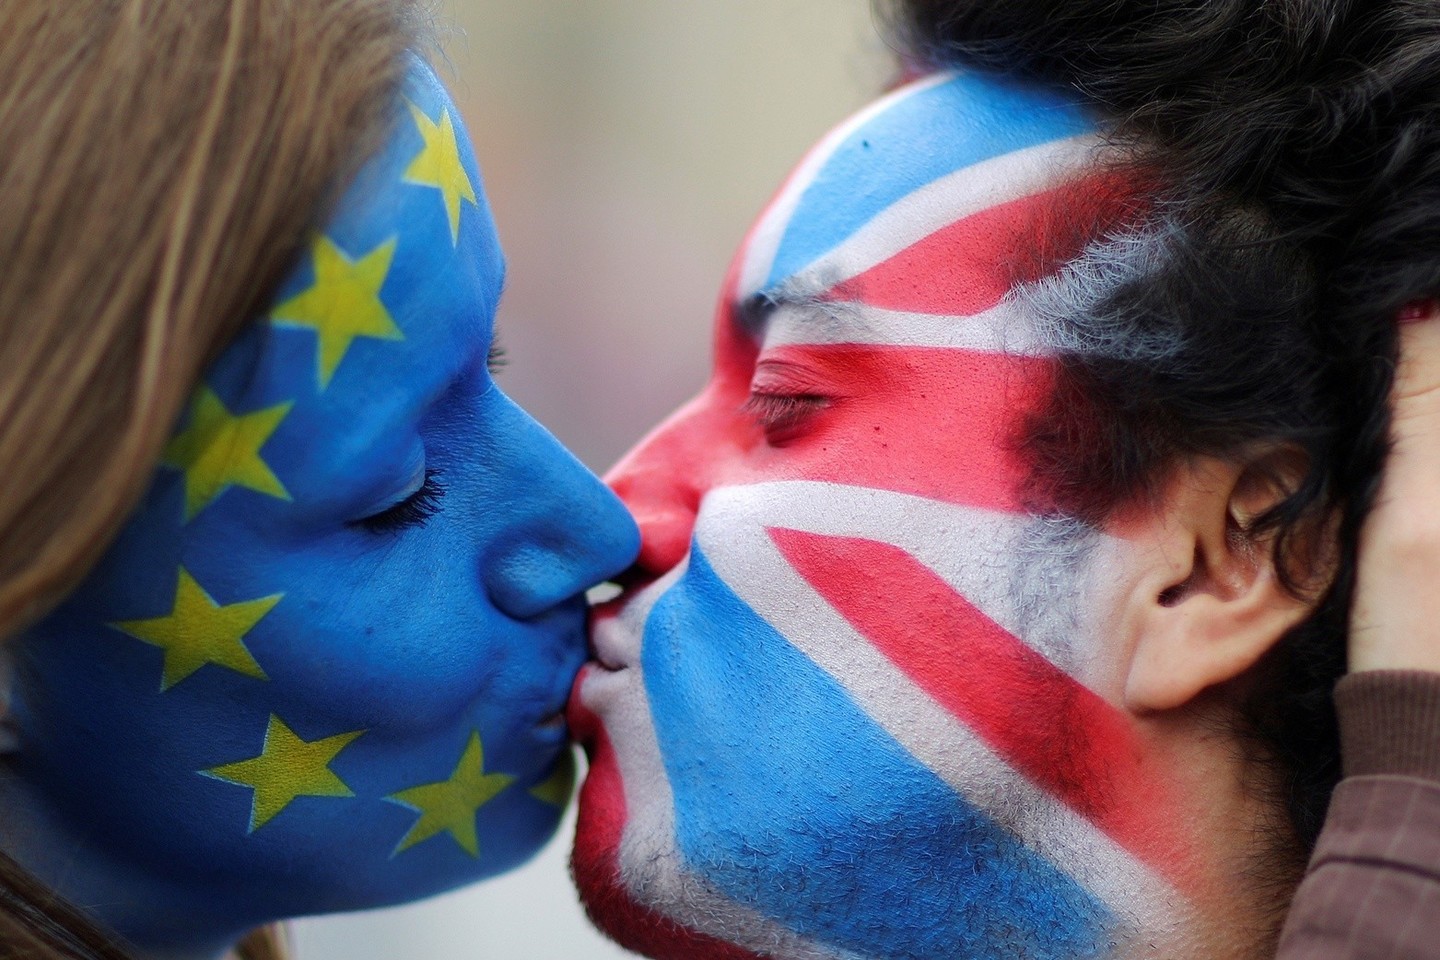 Po britų sprendimo palikti ES su imigracija susijusi padėtis taip pat keisis, nes į Britaniją iš ES dirbti atvažiuos žmonių, kas taip pat turės įtakos JK ekonomikos augimui.<br>Reuters/Scanpix nuotr.